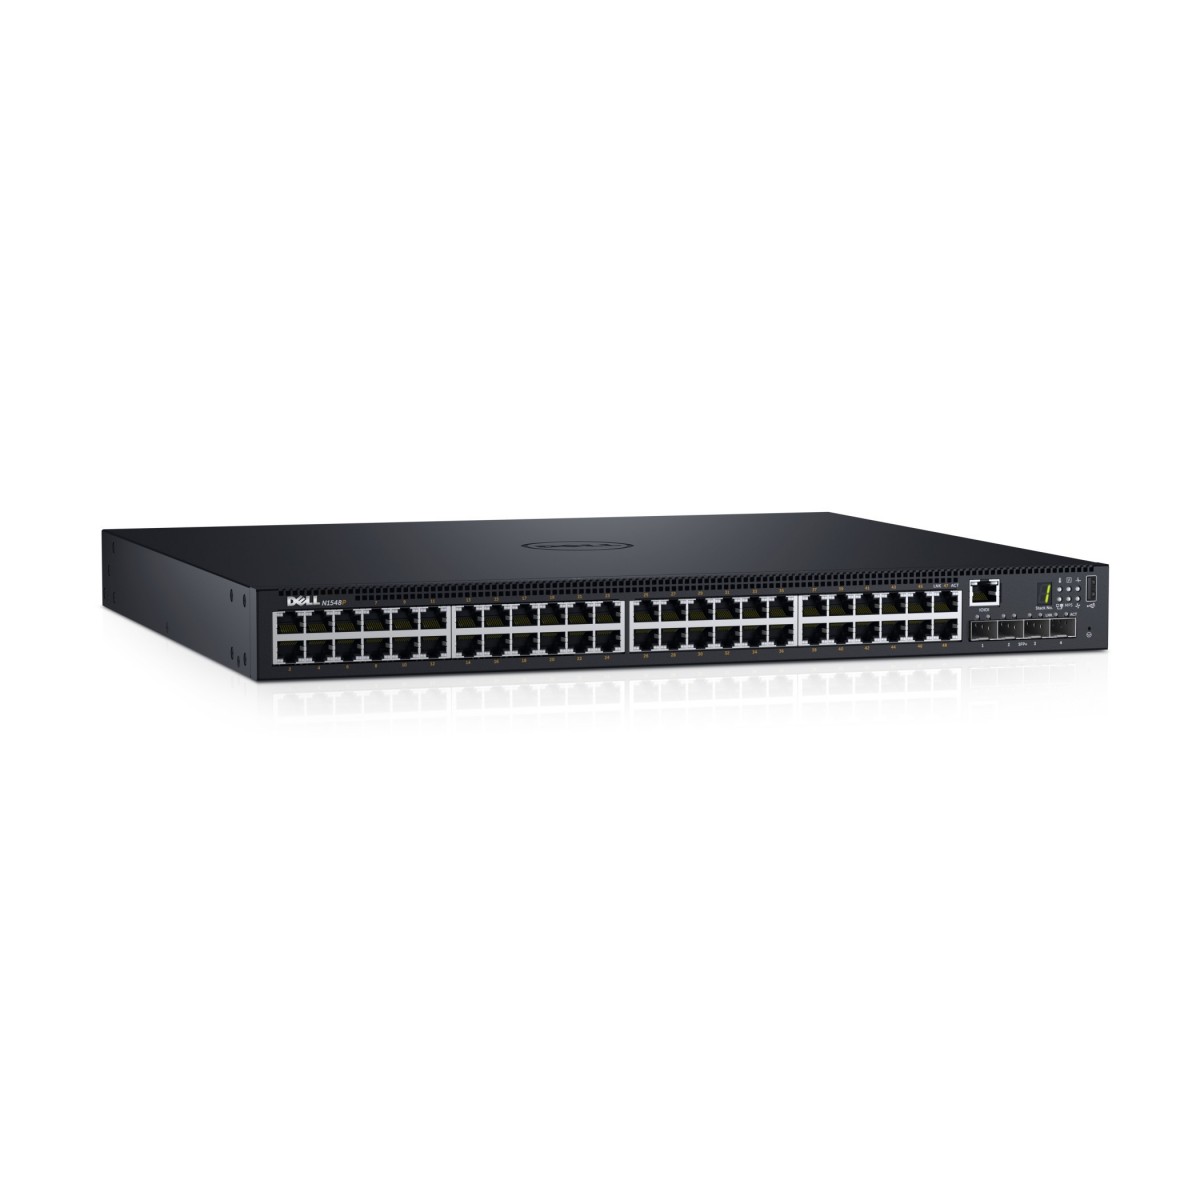 Dell N1548P - Managed - L3 - Gigabit Ethernet (10/100/1000) - Power over Ethernet (PoE) - Rack mounting - 1U